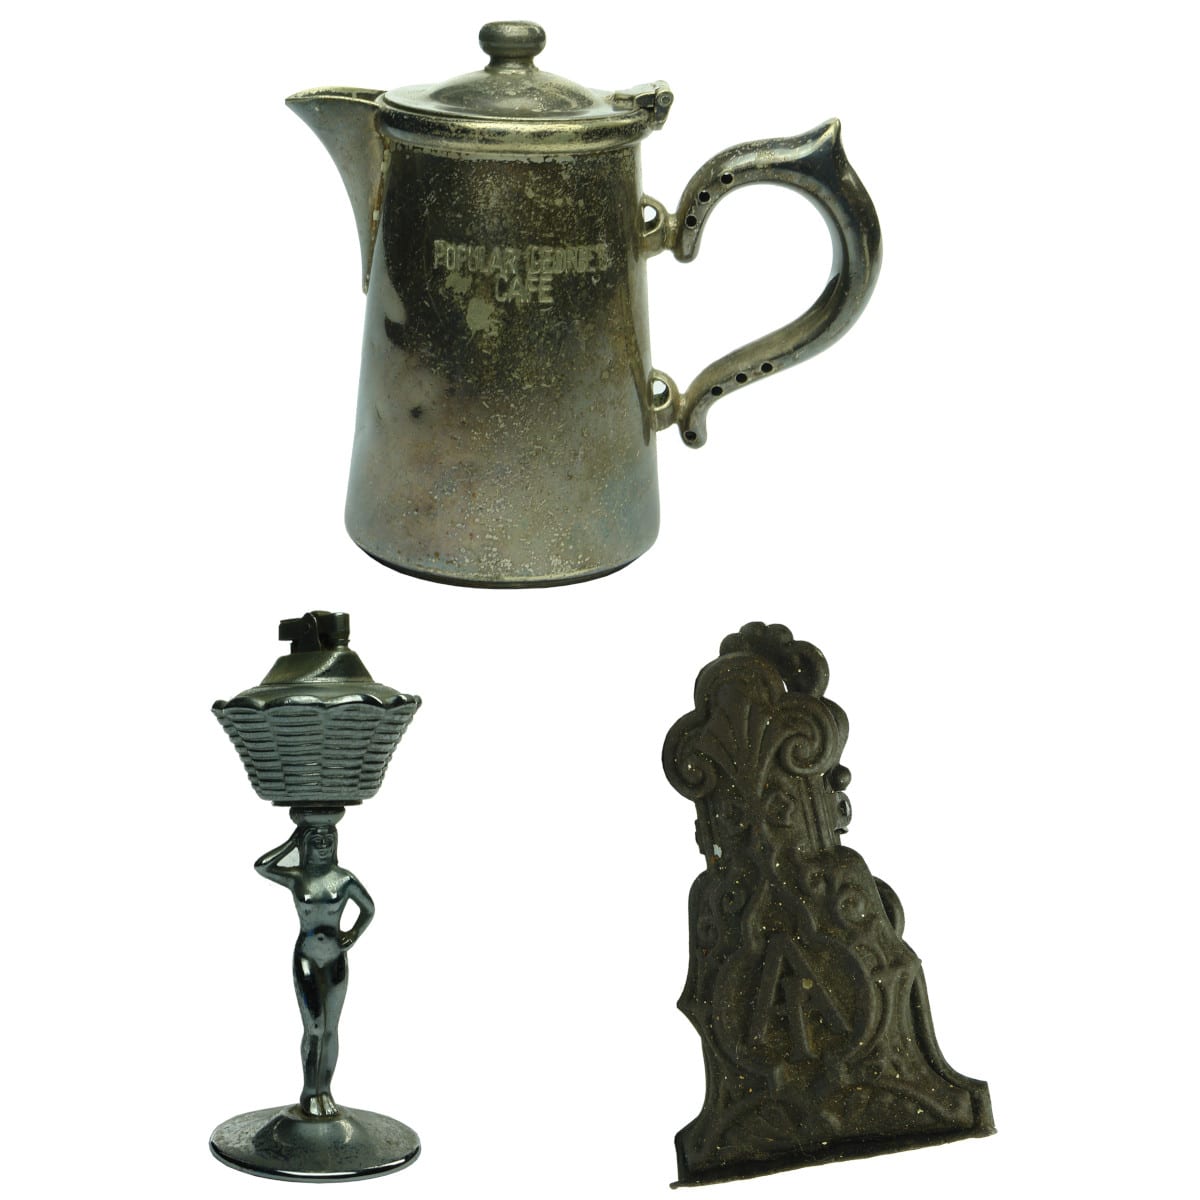 3 small metal items: EPNS Jug Popular George's Cafe; Figural cigarette lighter; large metal paper clip.